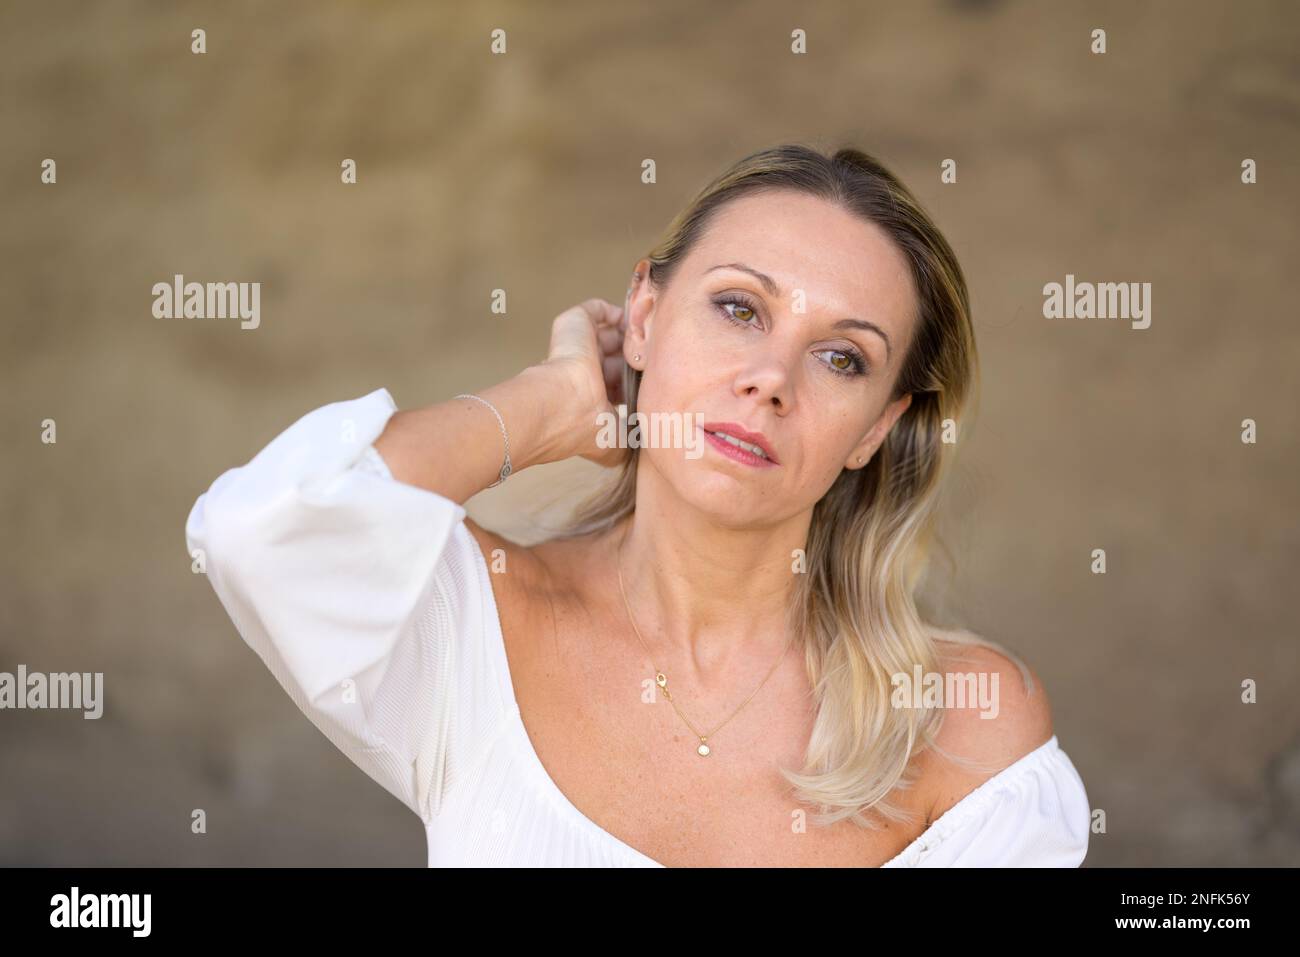 Il ritratto di una donna bionda di mezza età con una blusa bianca scorre una mano attraverso i suoi capelli con un'espressione facciale premurosa davanti ad una parete marrone Foto Stock